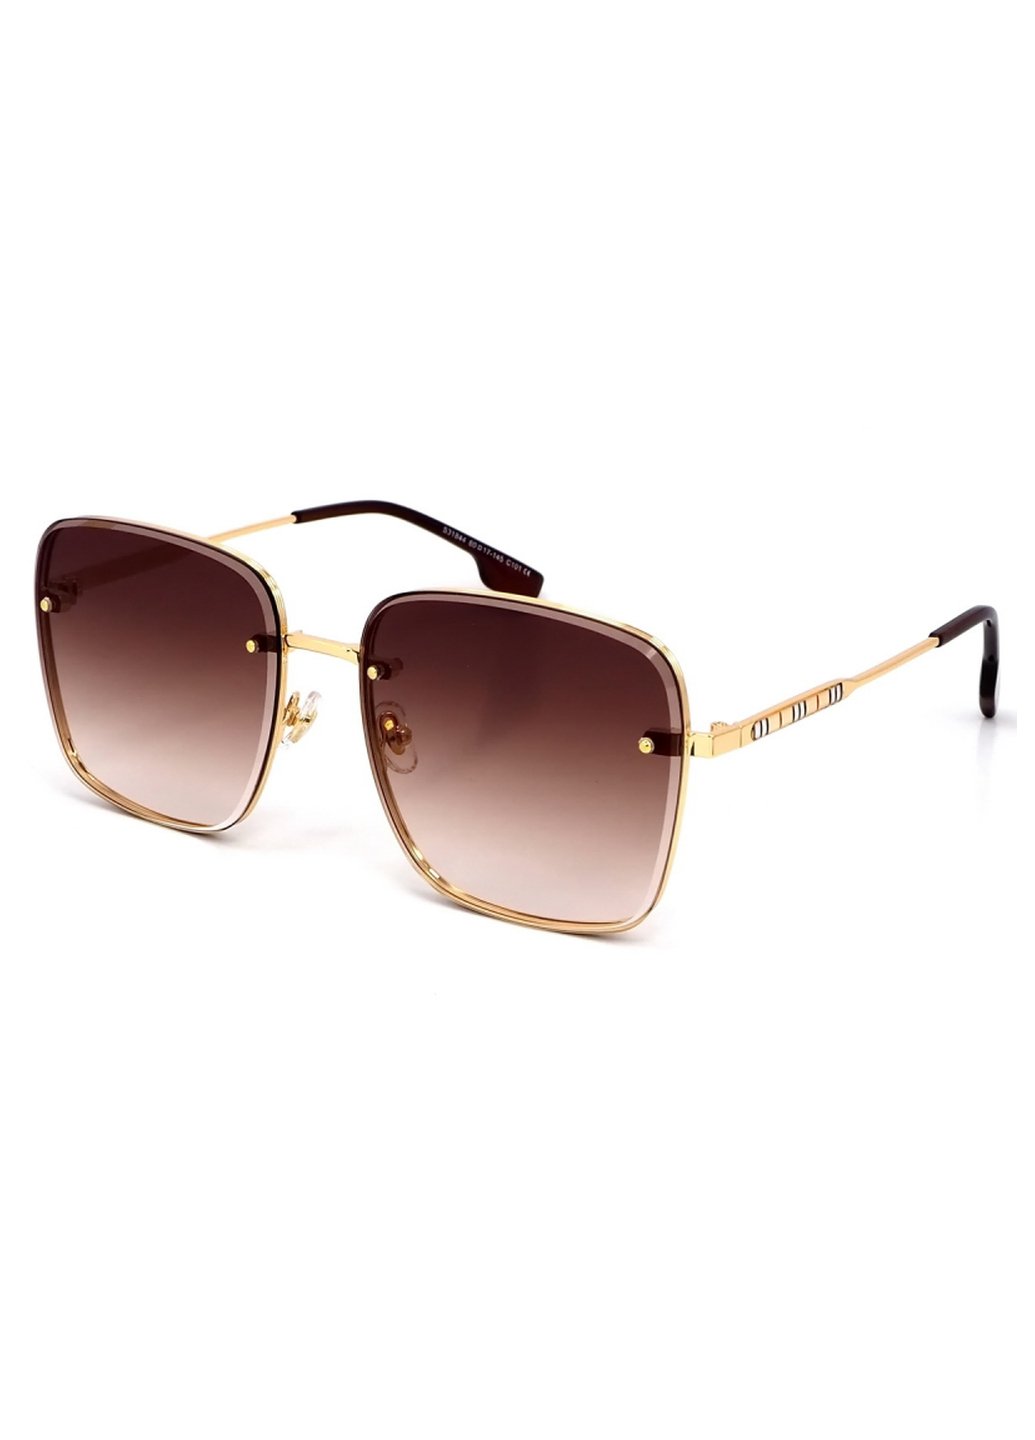 Купить Женские солнцезащитные очки Merlini с поляризацией S31844 117135 - Золотистый в интернет-магазине